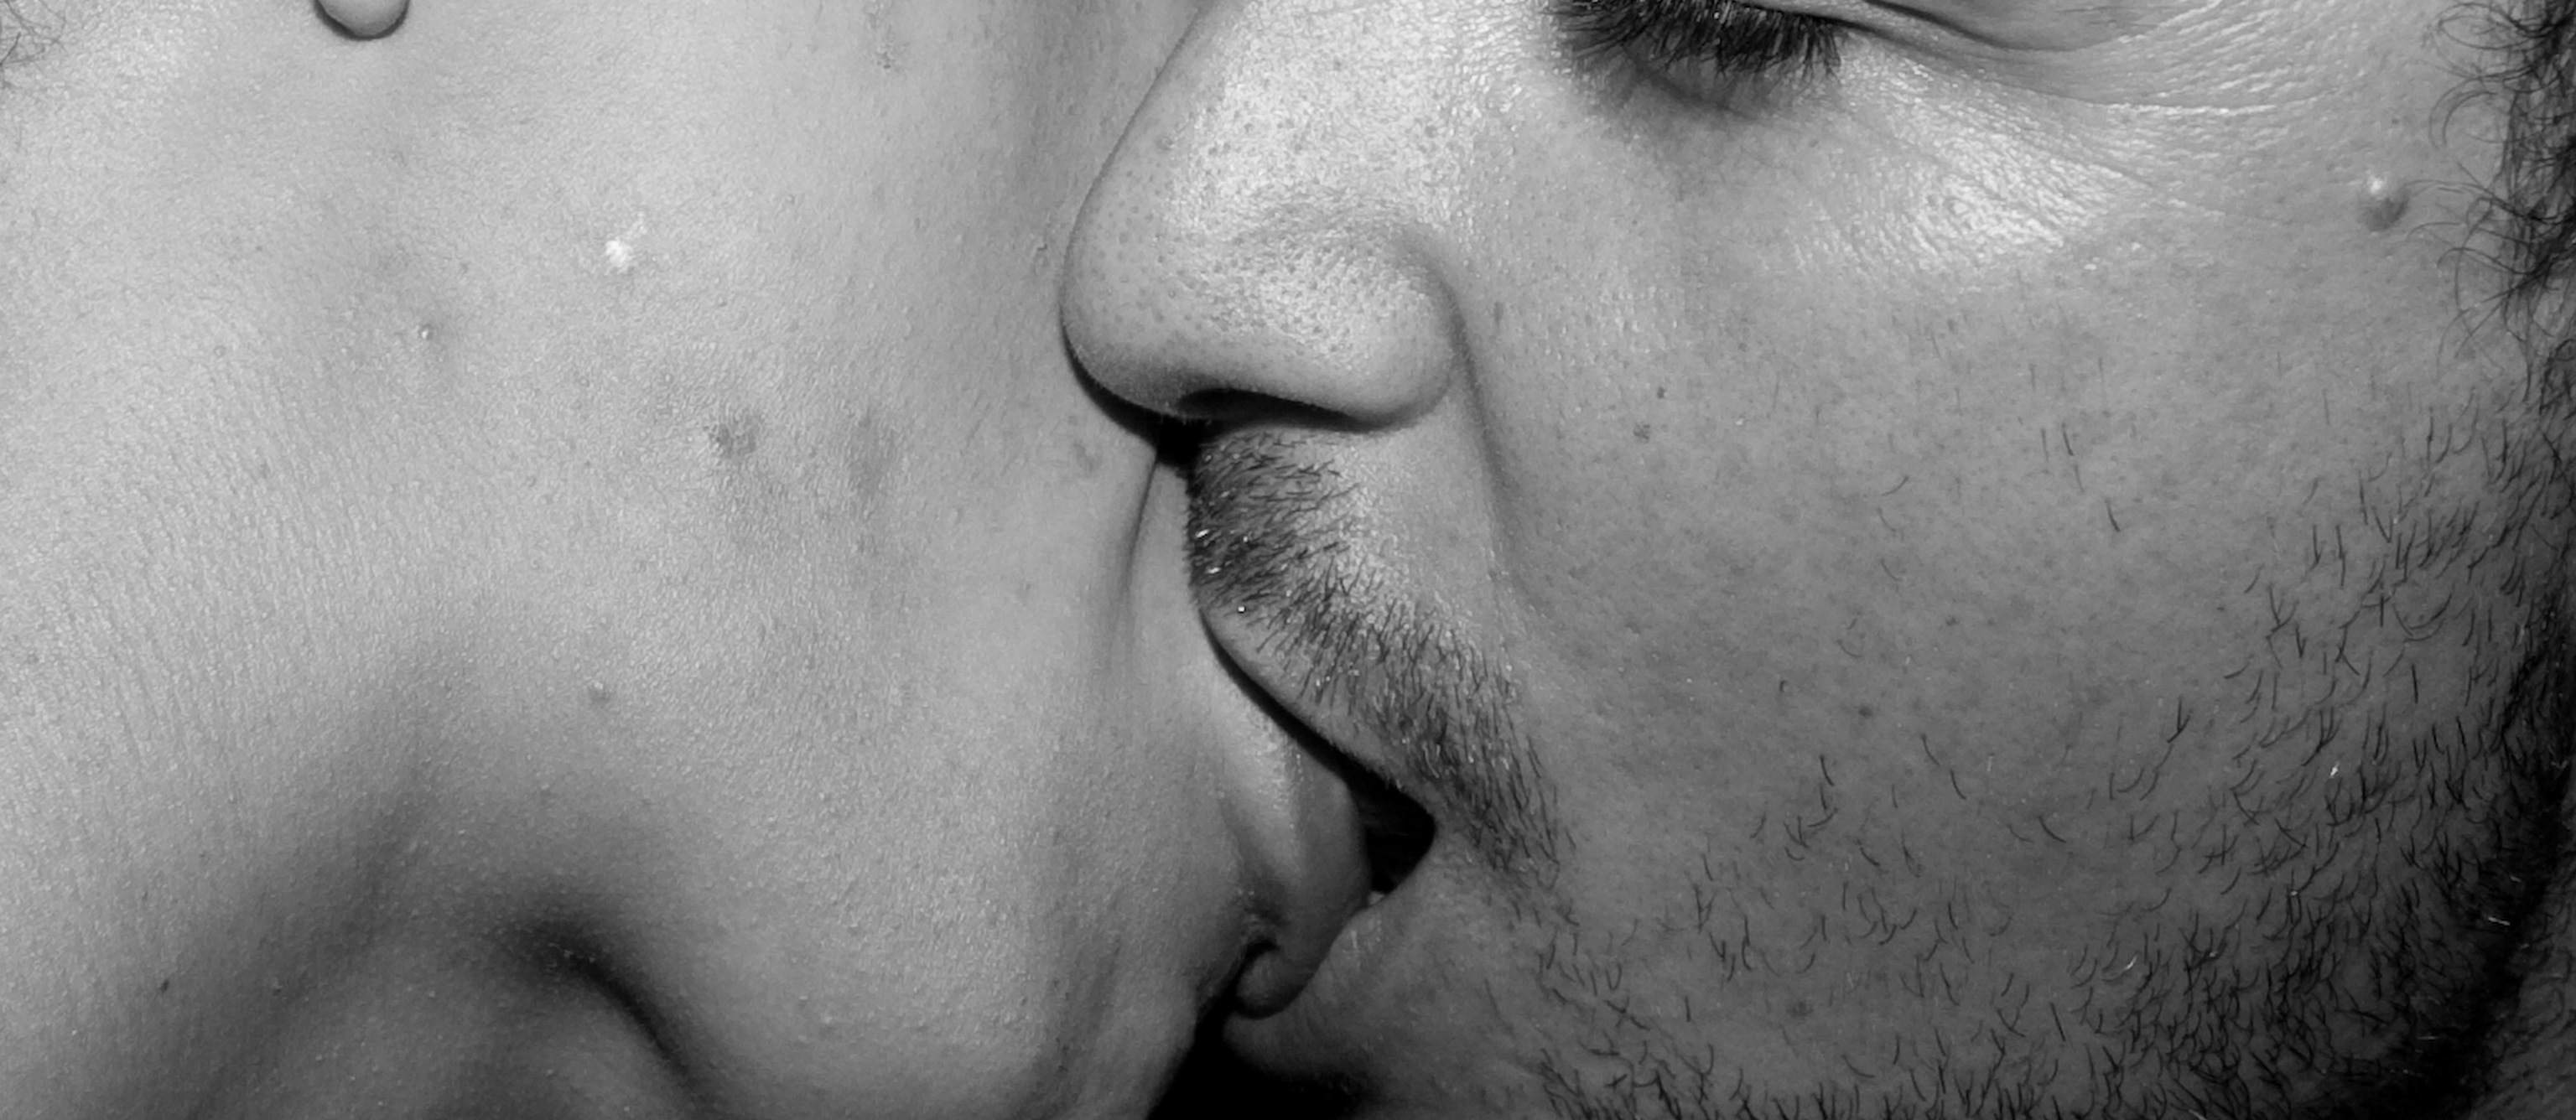 целовать языком фото